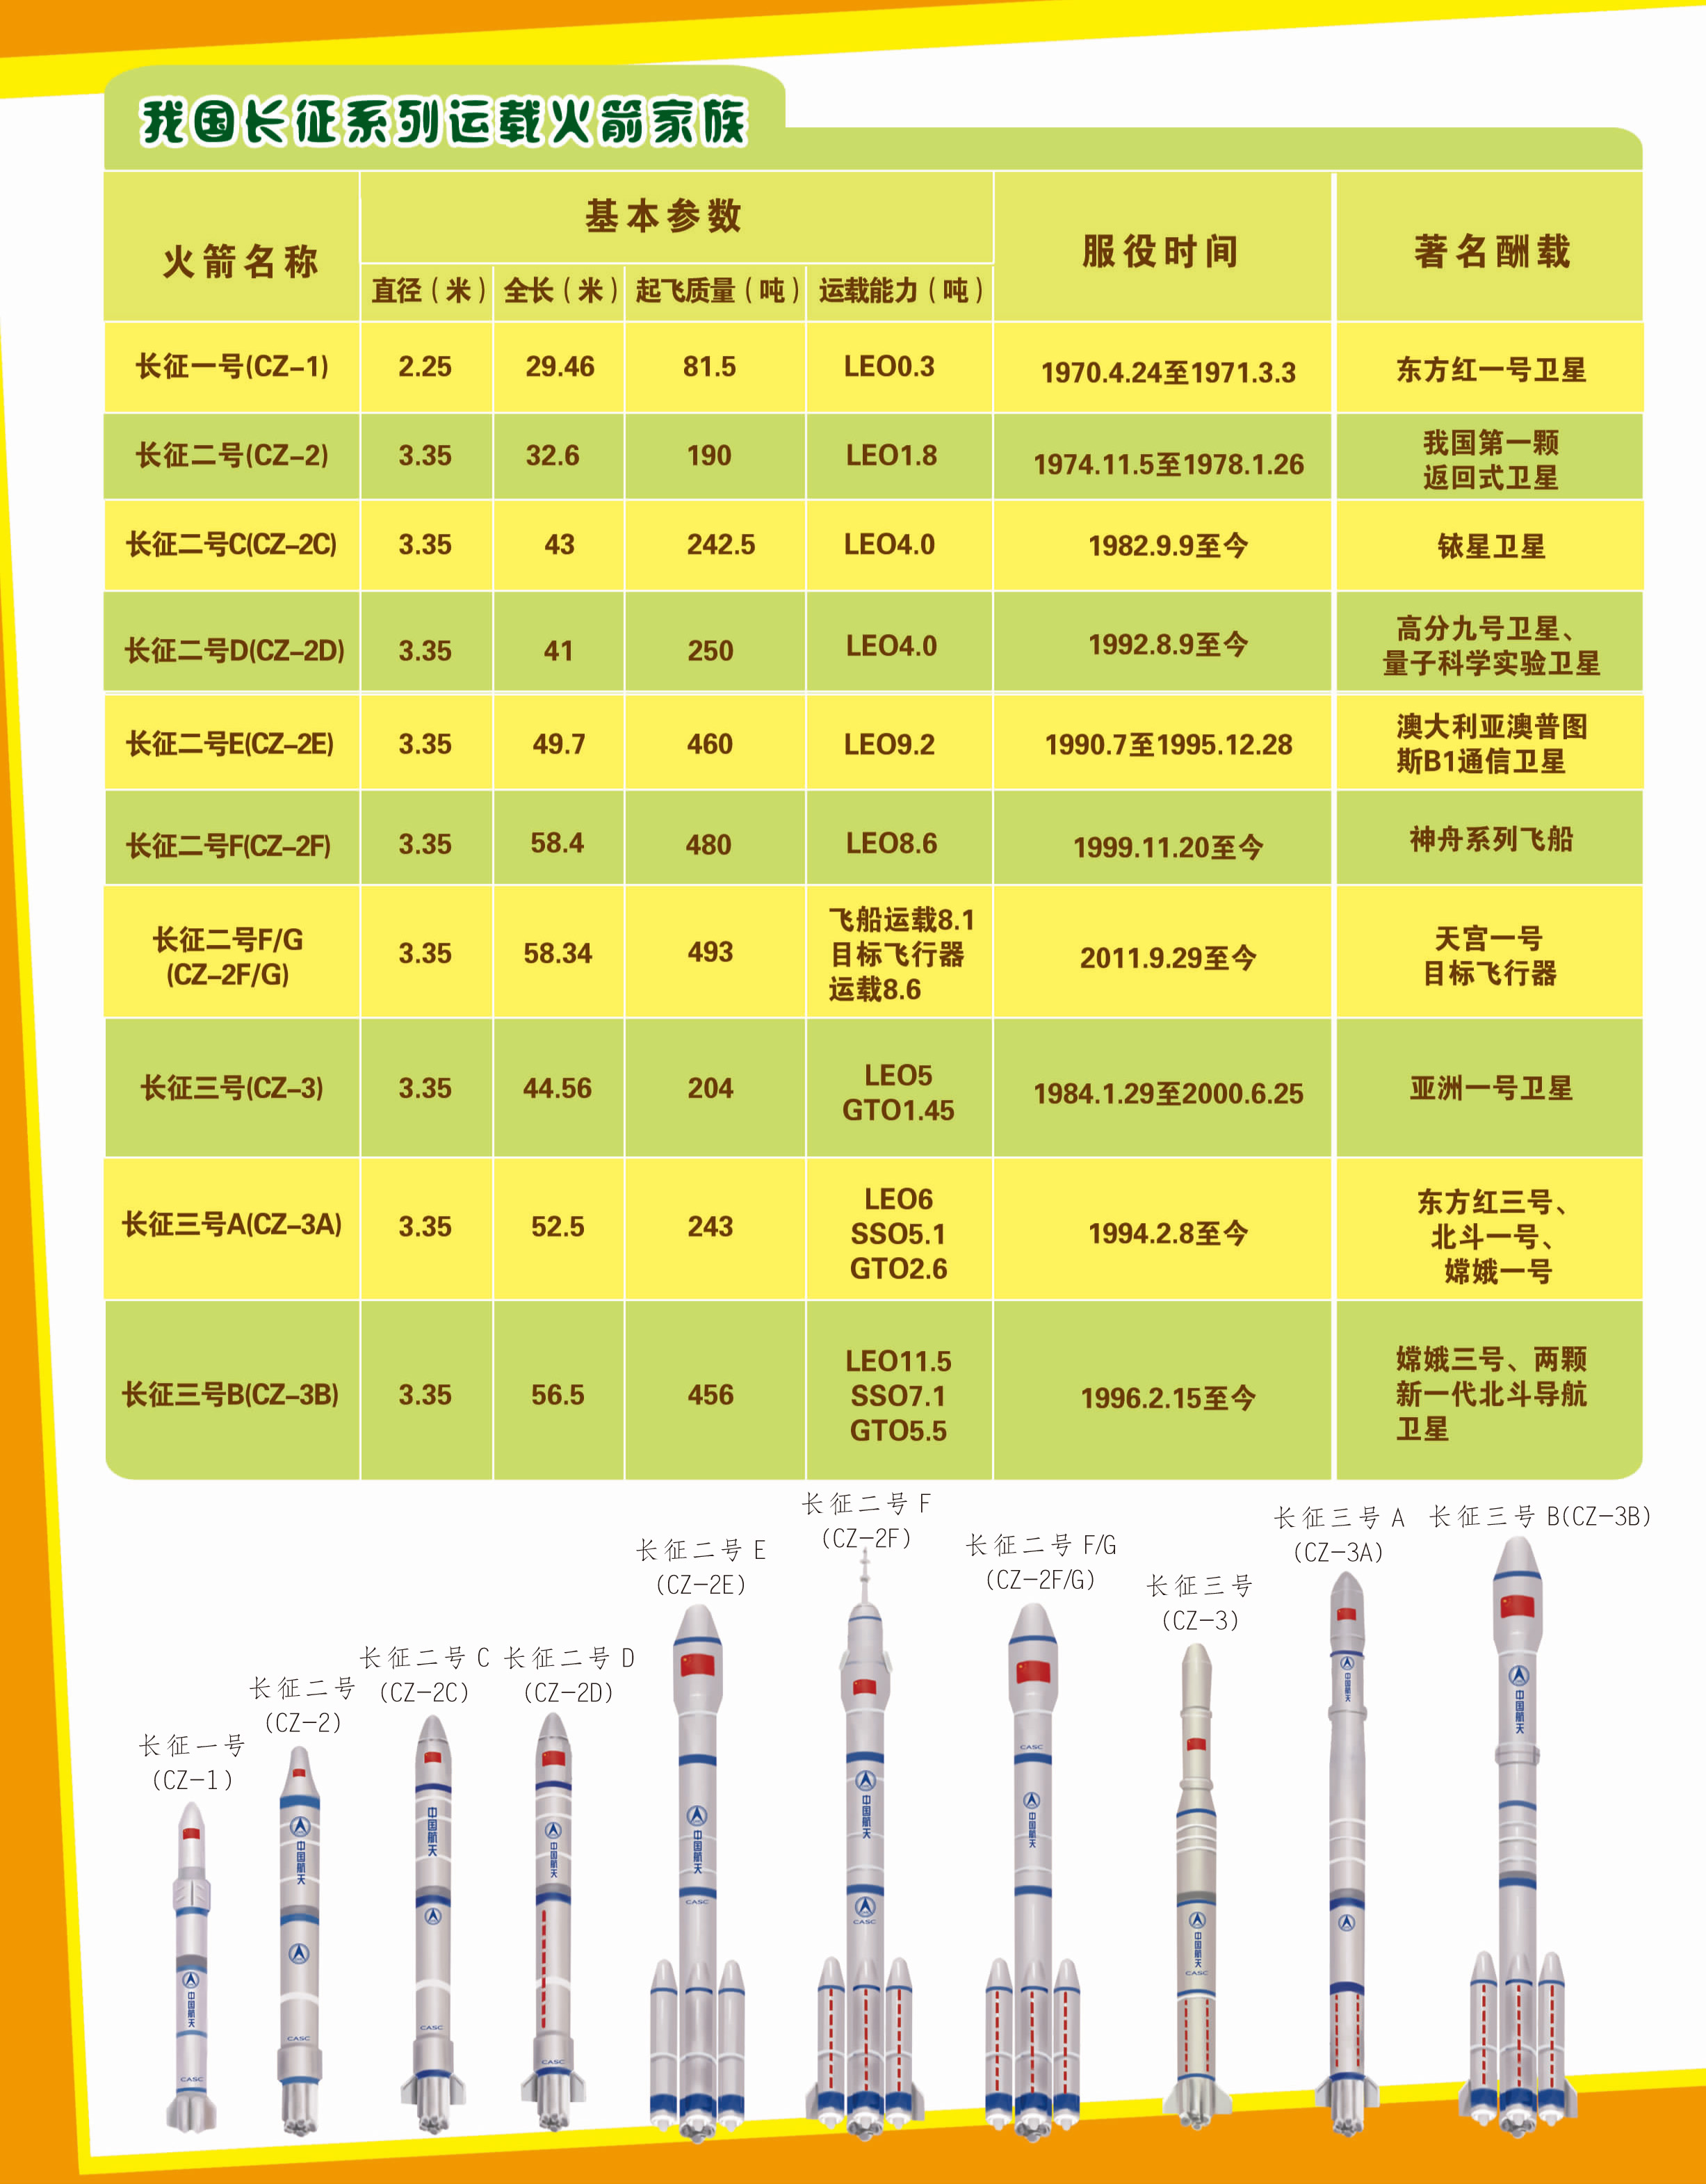 扶摇直上刺上青天——长征系列运载火箭发展史--中国数字科技馆